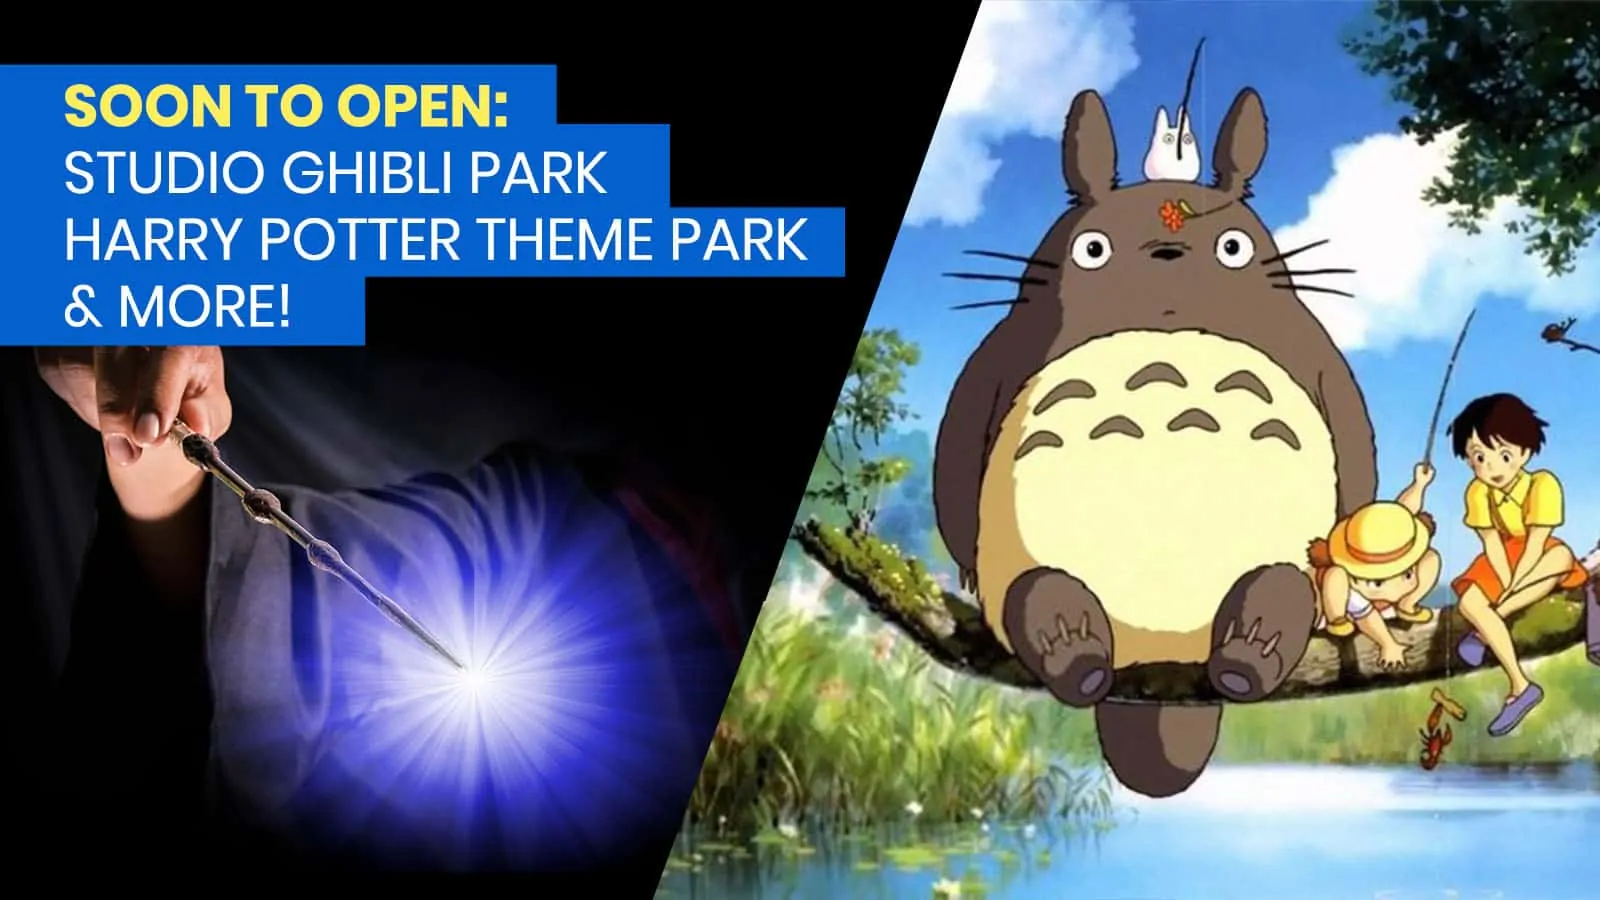 5个主题公园将在日本开放!